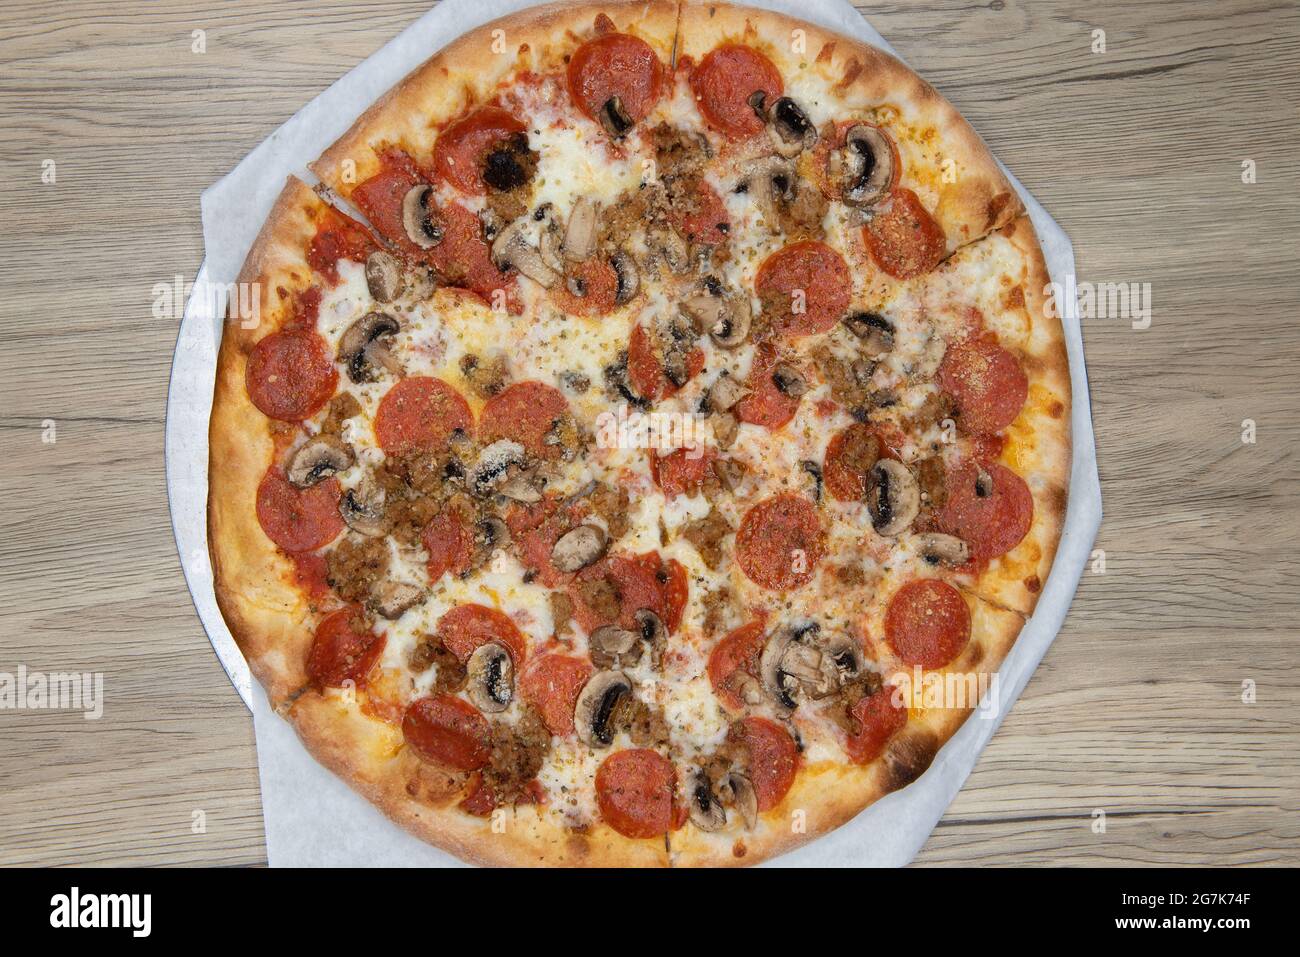 La vista panoramica dei formaggi fusi copre questa pizza a base di funghi e pepperoni con la crosta croccante cotta alla perfezione. Foto Stock